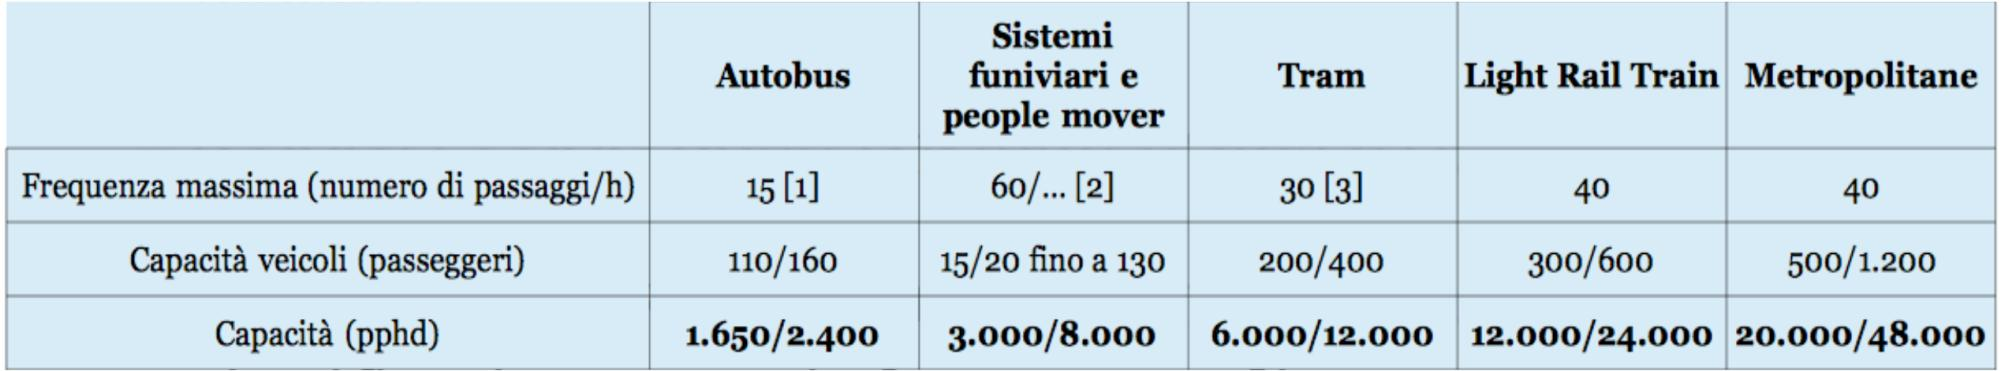 Quale sistema Sistemi di trasporto che offrono capacità intermedie 3.000/8.000 pphd (impianti funiviari e people mover) 6.000/12.